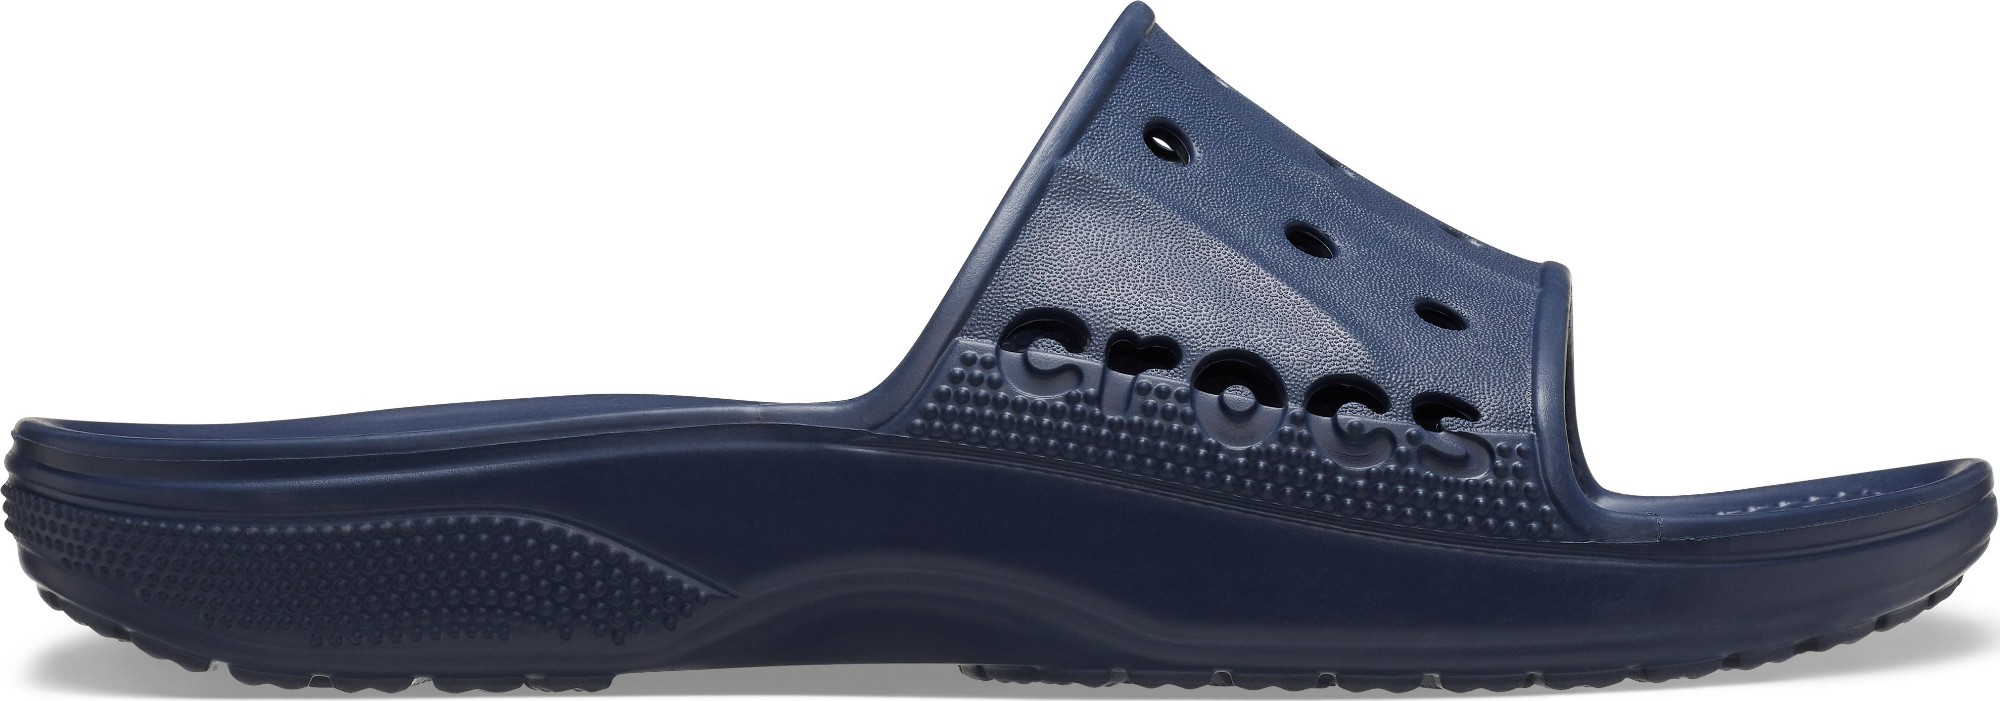 Crocs™ Baya II Slide Navy 41